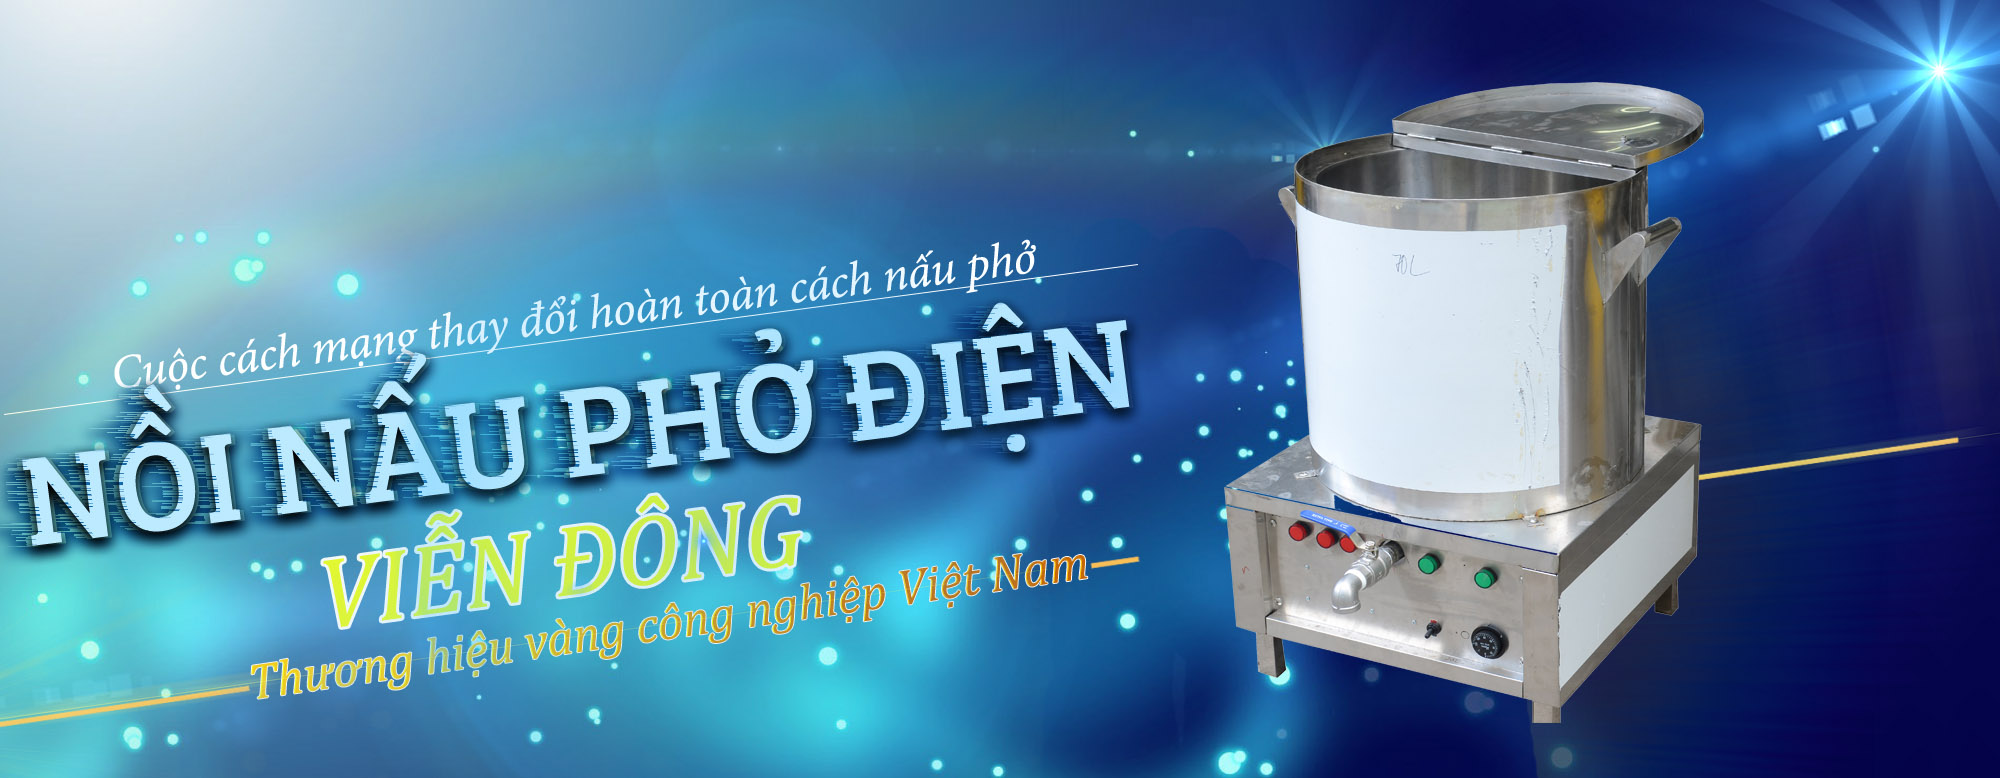 Bộ nồi nấu phở Việt Nam